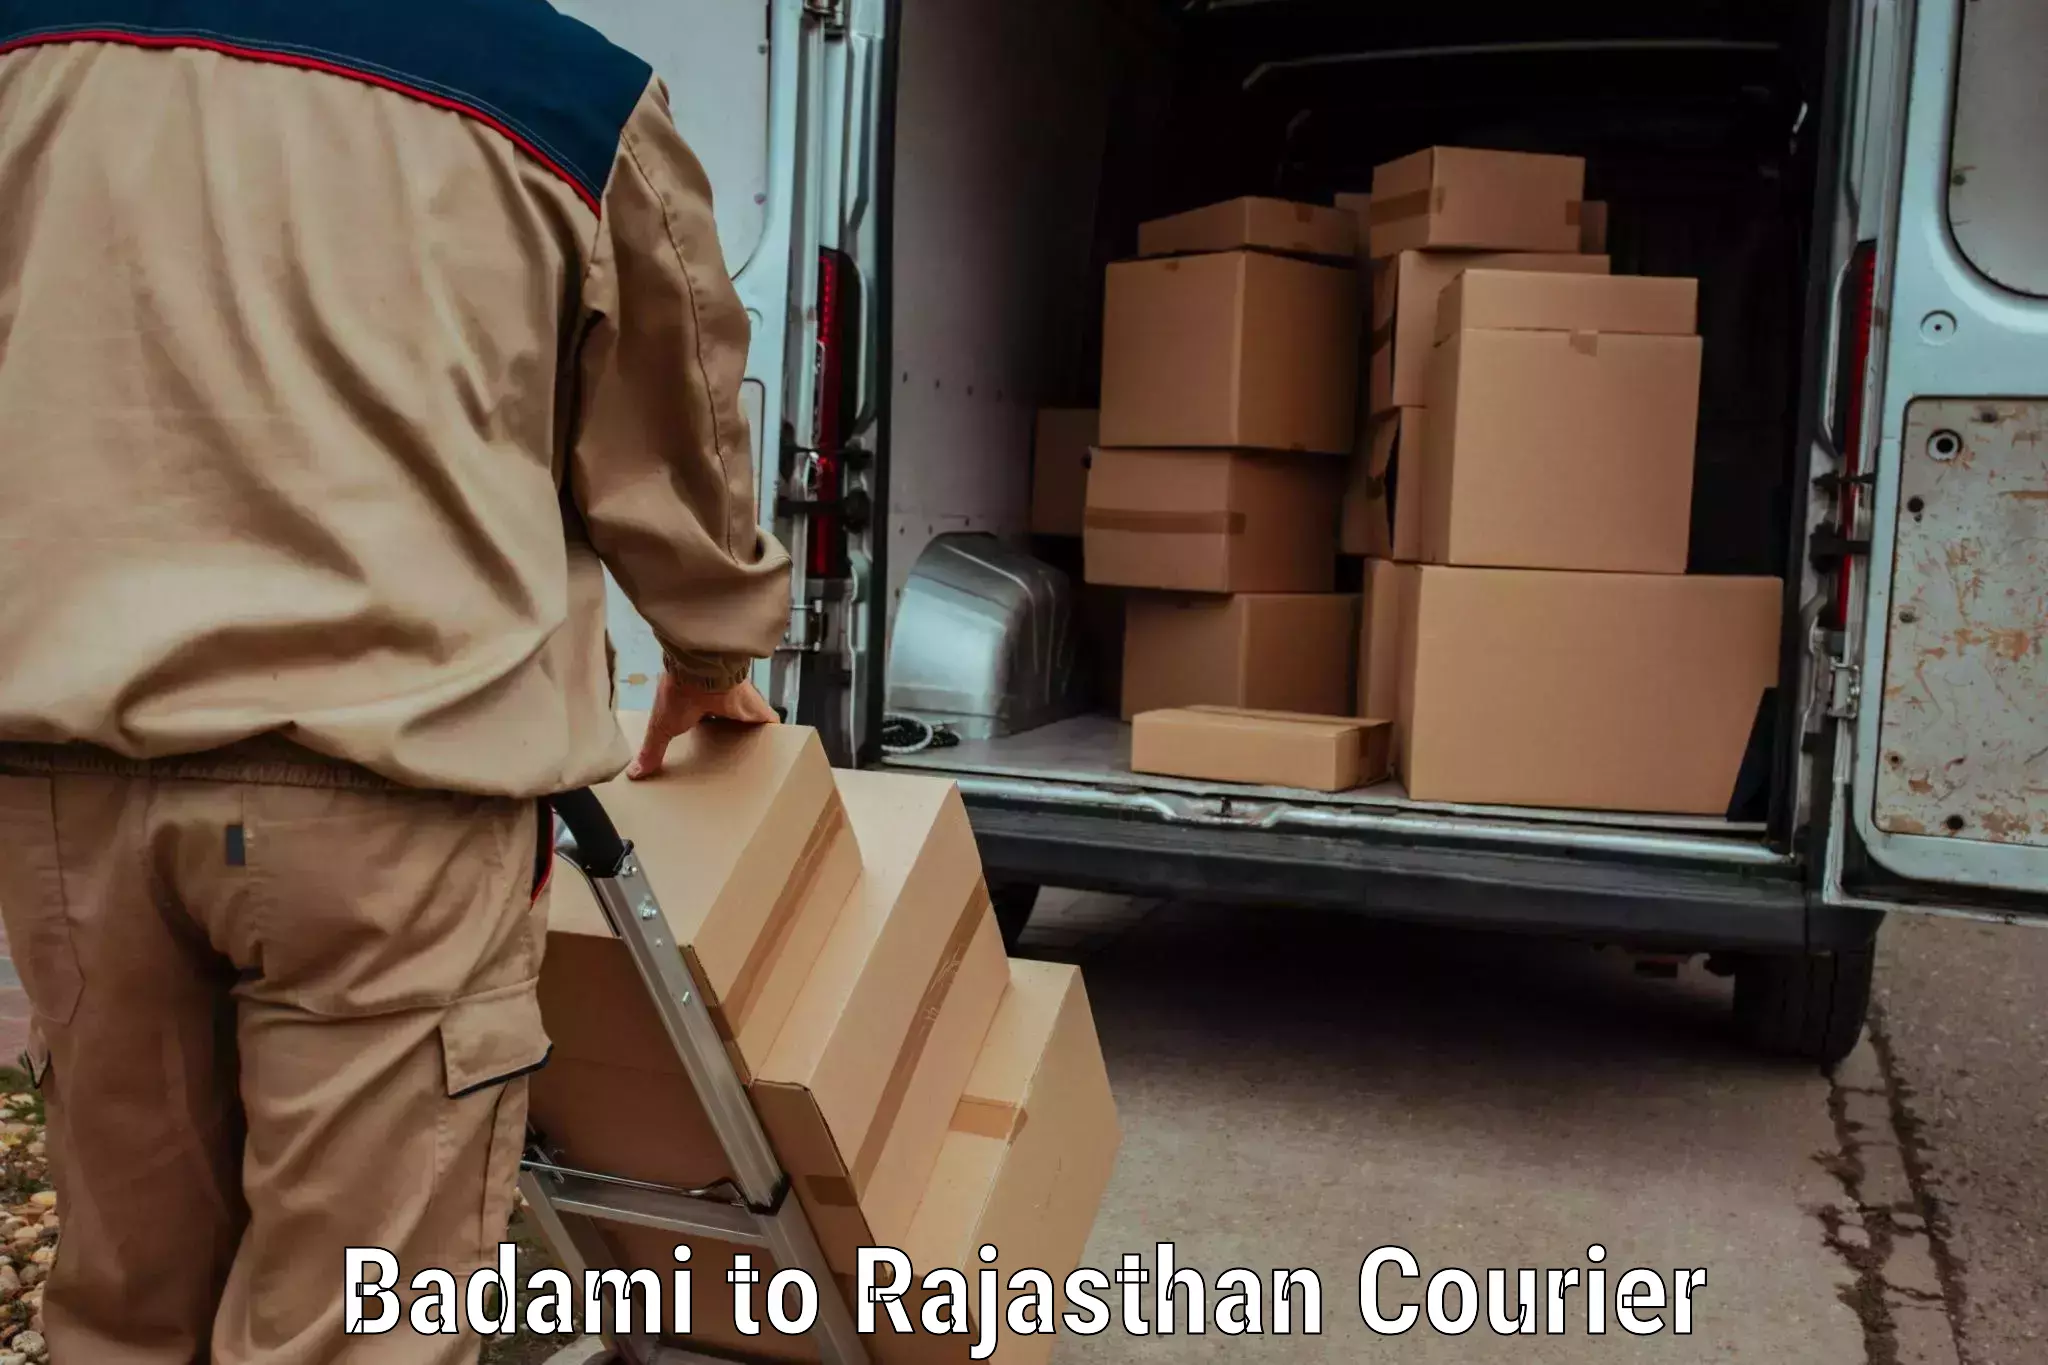 Ocean freight courier Badami to Pokhran